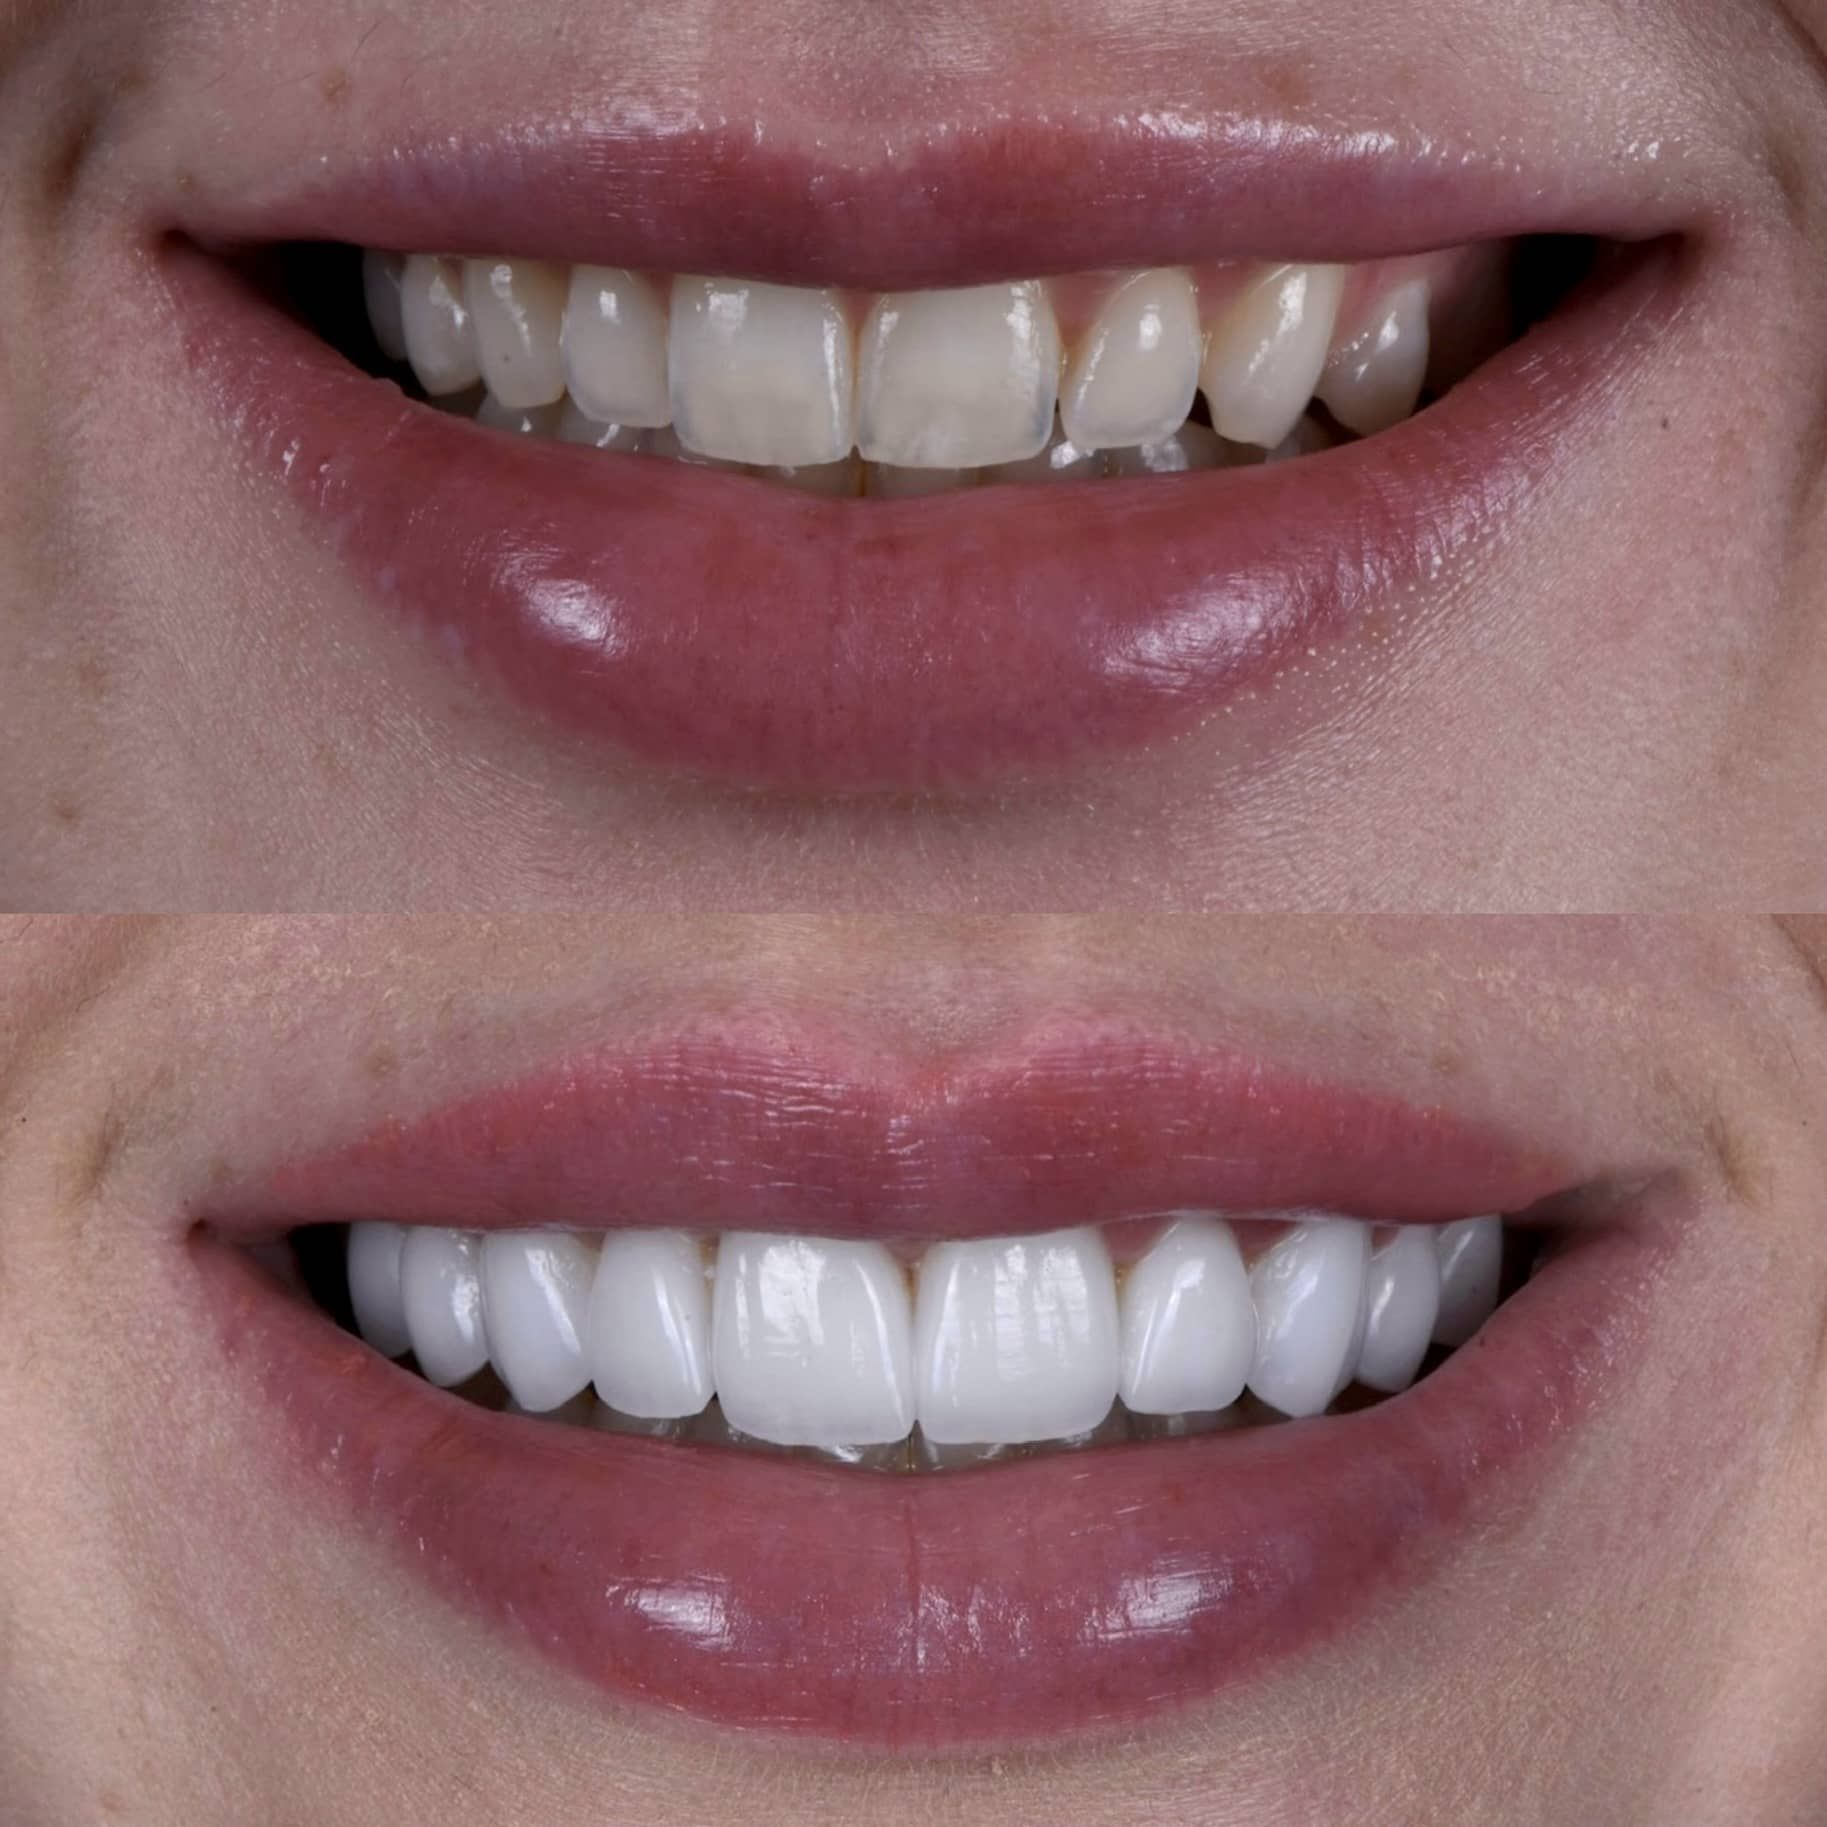 LA dentist showing veneer results